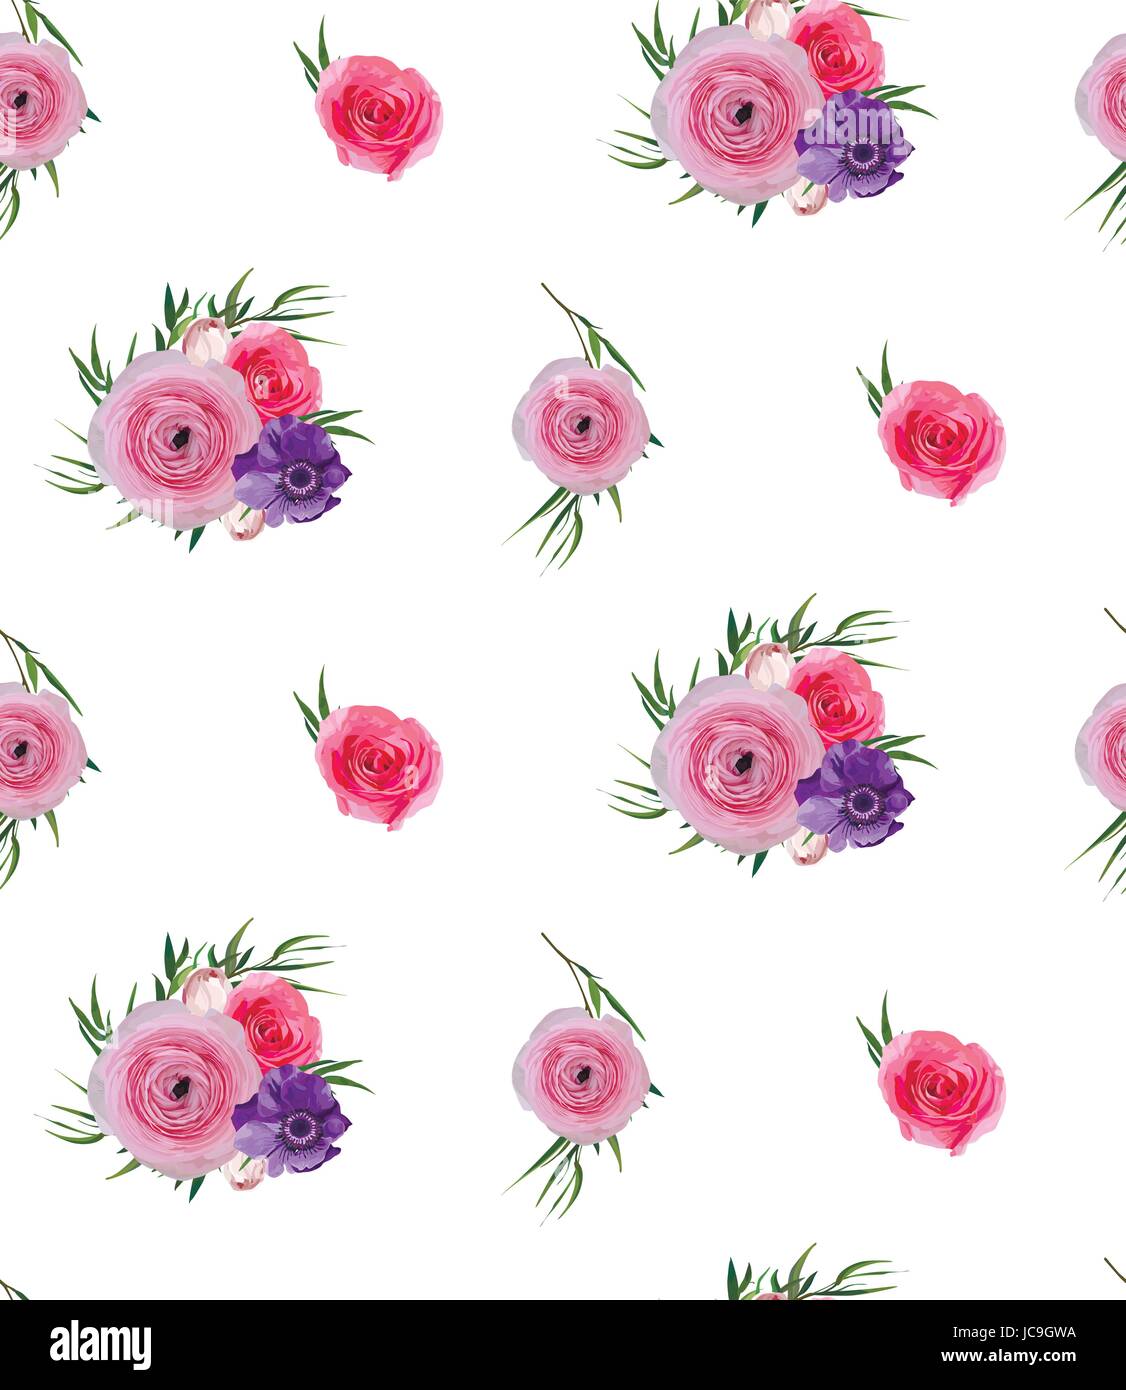 Floreale di fiori rosa Vintage giardino di rose fiori Ranunculus pulsanti Anemone, Agonis belle foglie decorative bouquet seamless pattern come sfondo Illustrazione Vettoriale